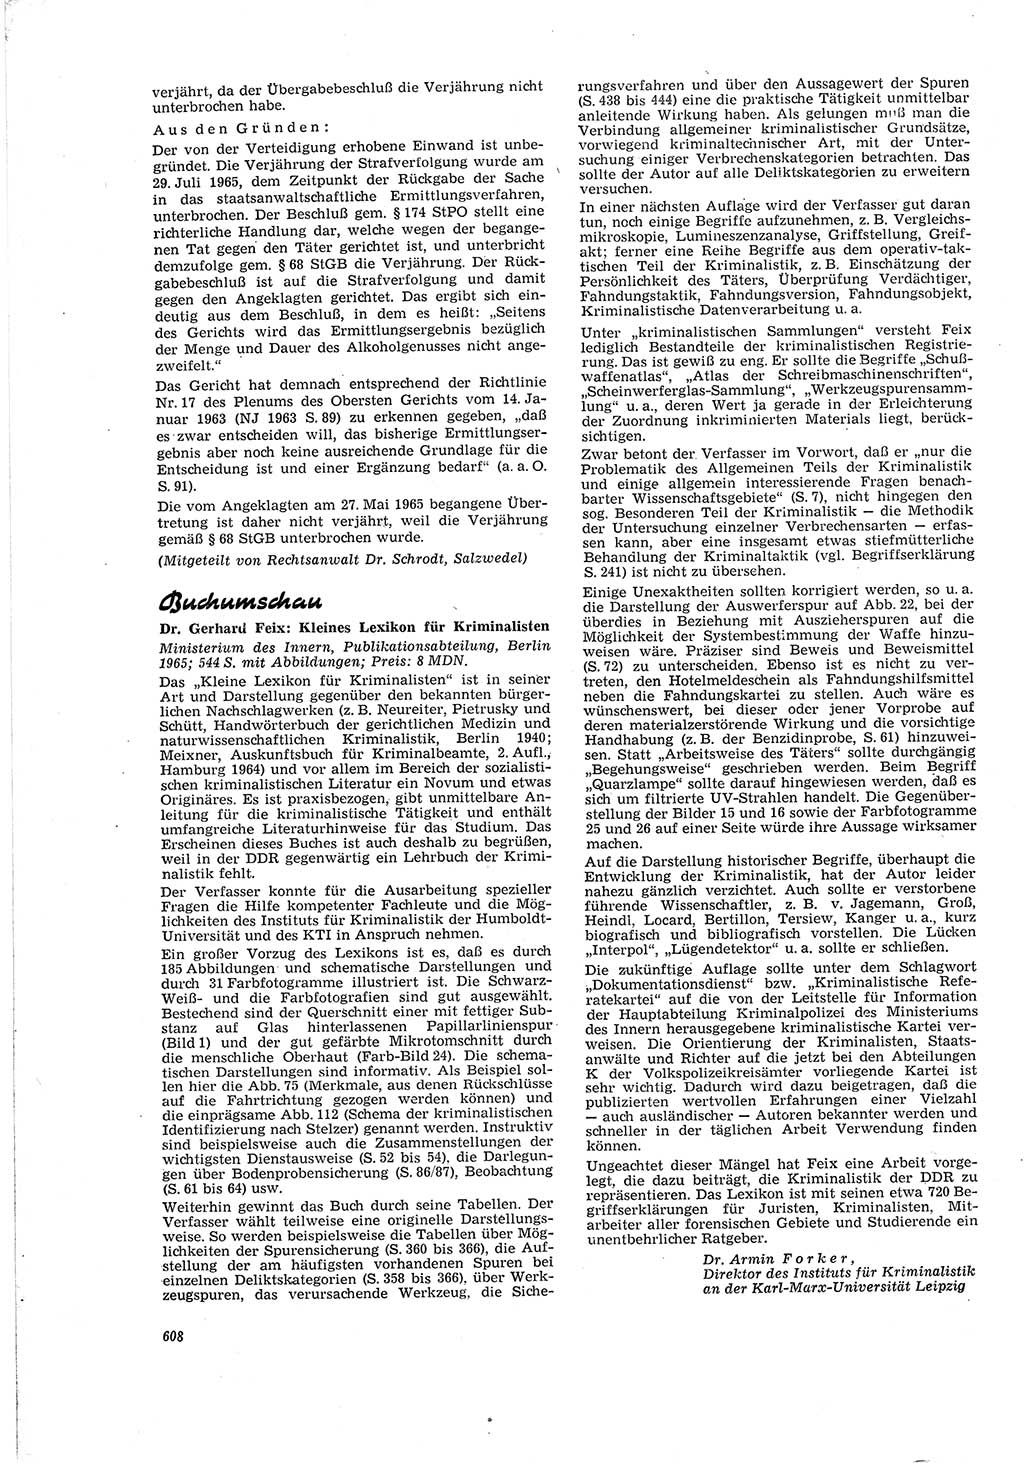 Neue Justiz (NJ), Zeitschrift für Recht und Rechtswissenschaft [Deutsche Demokratische Republik (DDR)], 20. Jahrgang 1966, Seite 608 (NJ DDR 1966, S. 608)